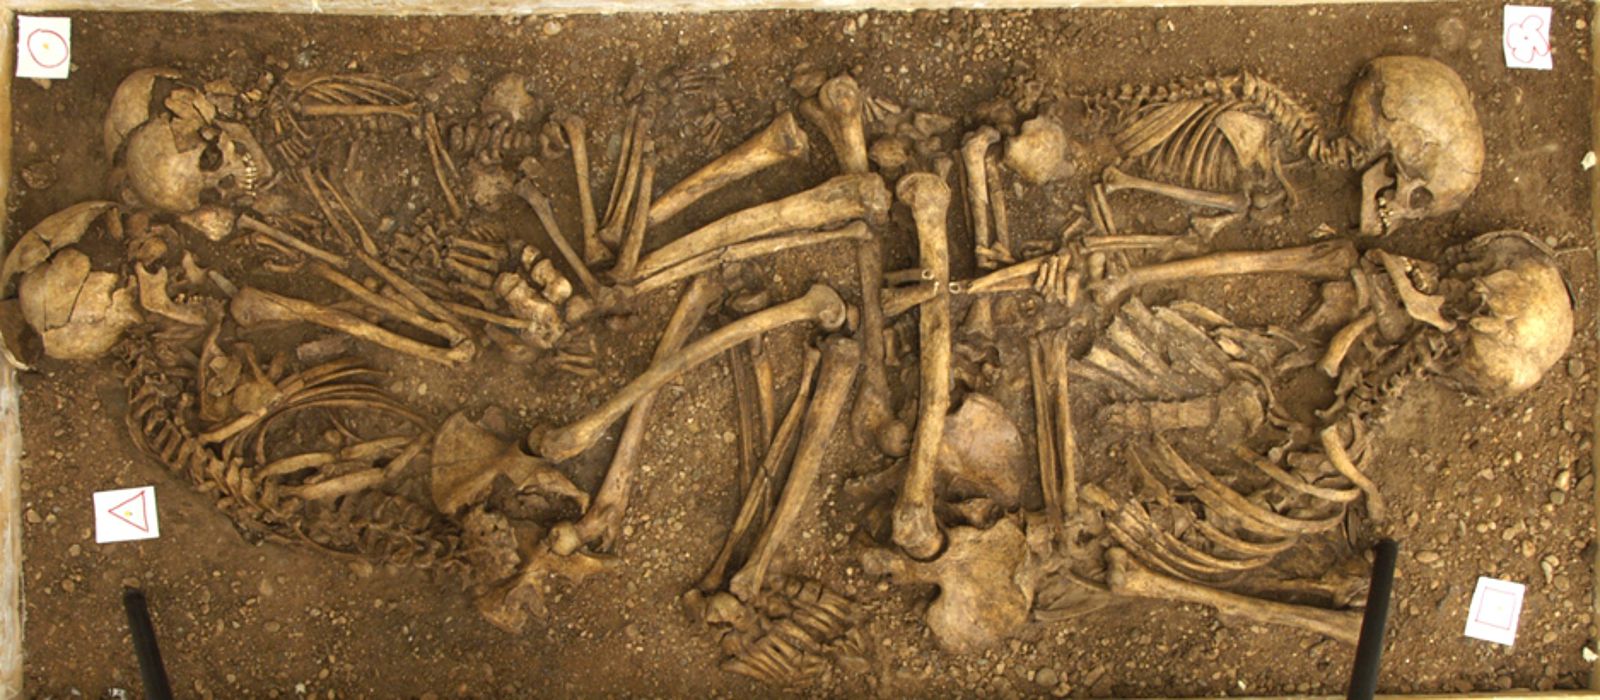 La sépulture collective de Mentesh Tepe informe sur le rôle des mouvements de population  dans la néolithisation.